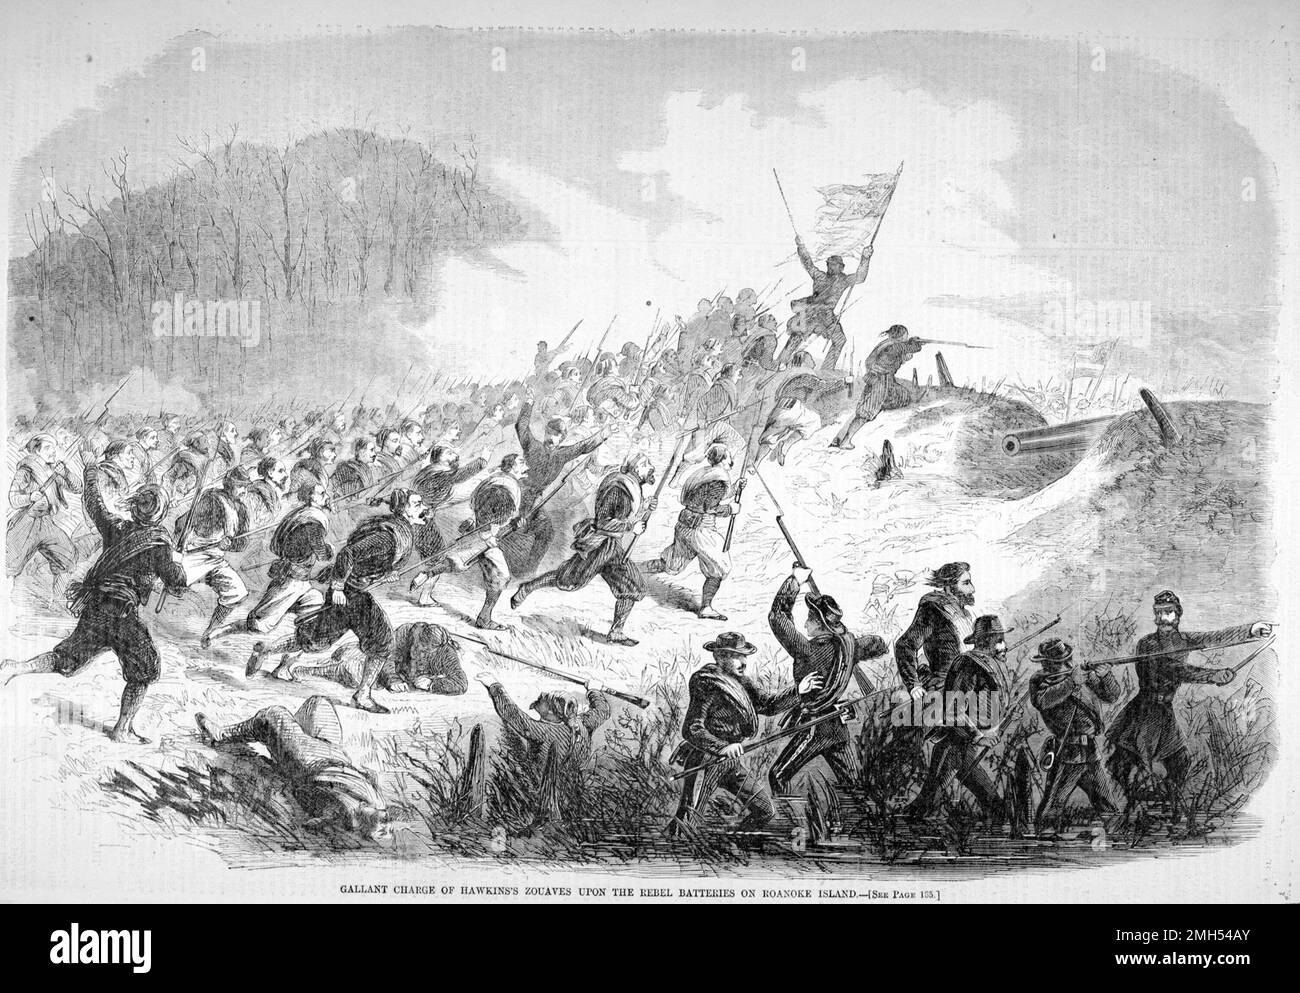 La battaglia di Roanoke Island fu una battaglia nella guerra civile americana combattuta il 7-8th febbraio 1862 nella Carolina del Nord. Fu un assalto anfibio unionista sotto il comando di Ambrose Burnside, e fu una vittoria unionista quando l'isola fu catturata. L'immagine raffigura una carica di Zouaves di Hawkins Foto Stock